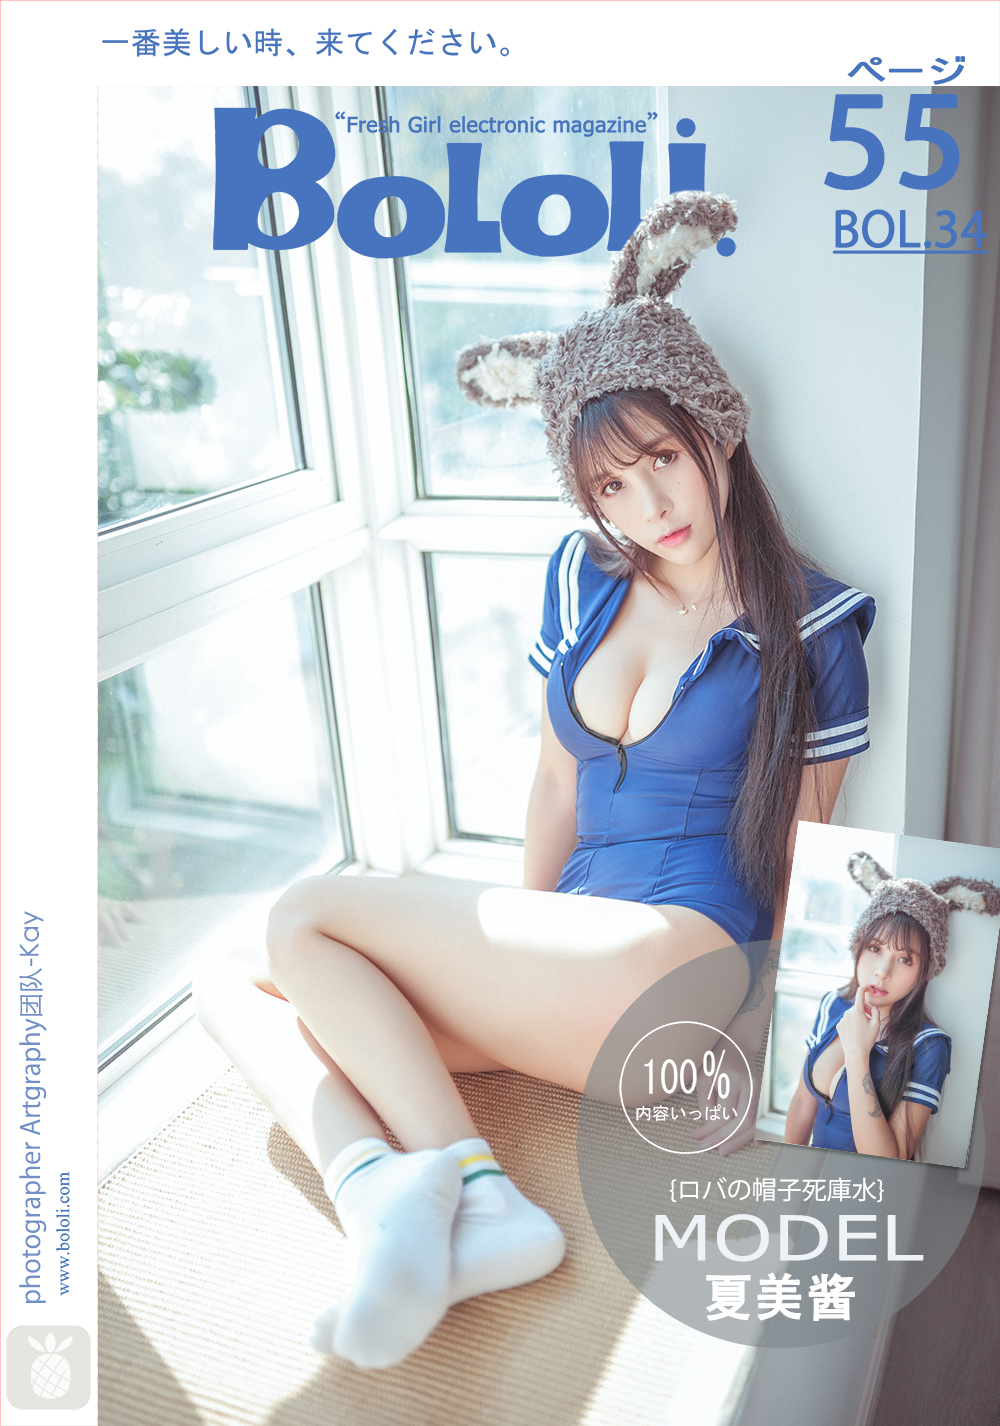 BoLoli 2017-03-19 Vol.034: Model Xia Mei Jiang (夏 美 酱) (56 photos) photo 1-0